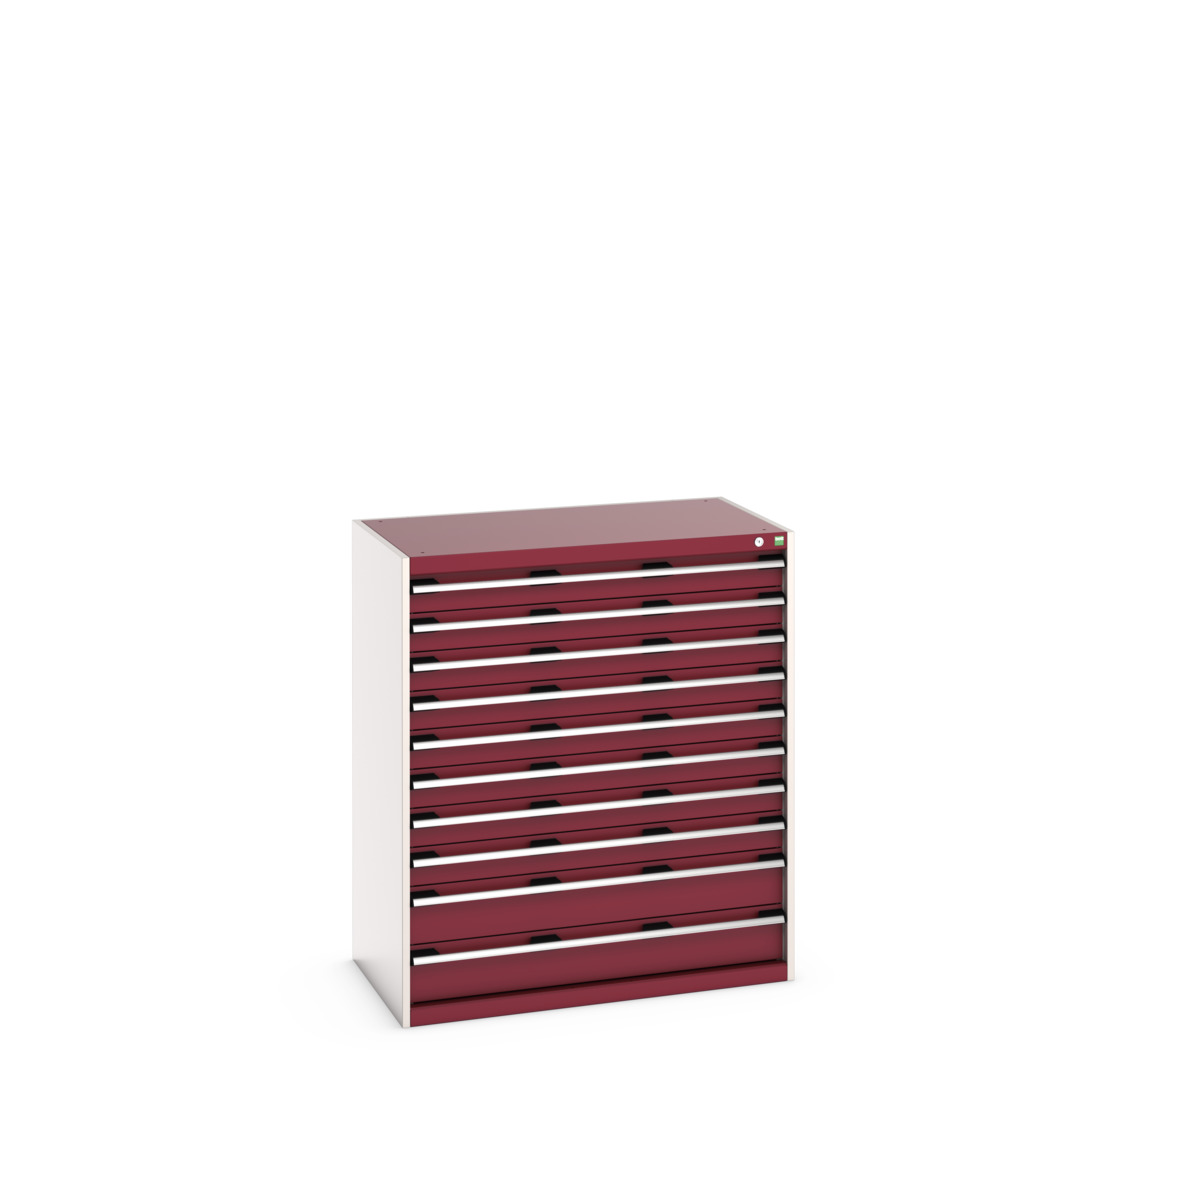 40021042.24V - cubio drawer cabinet